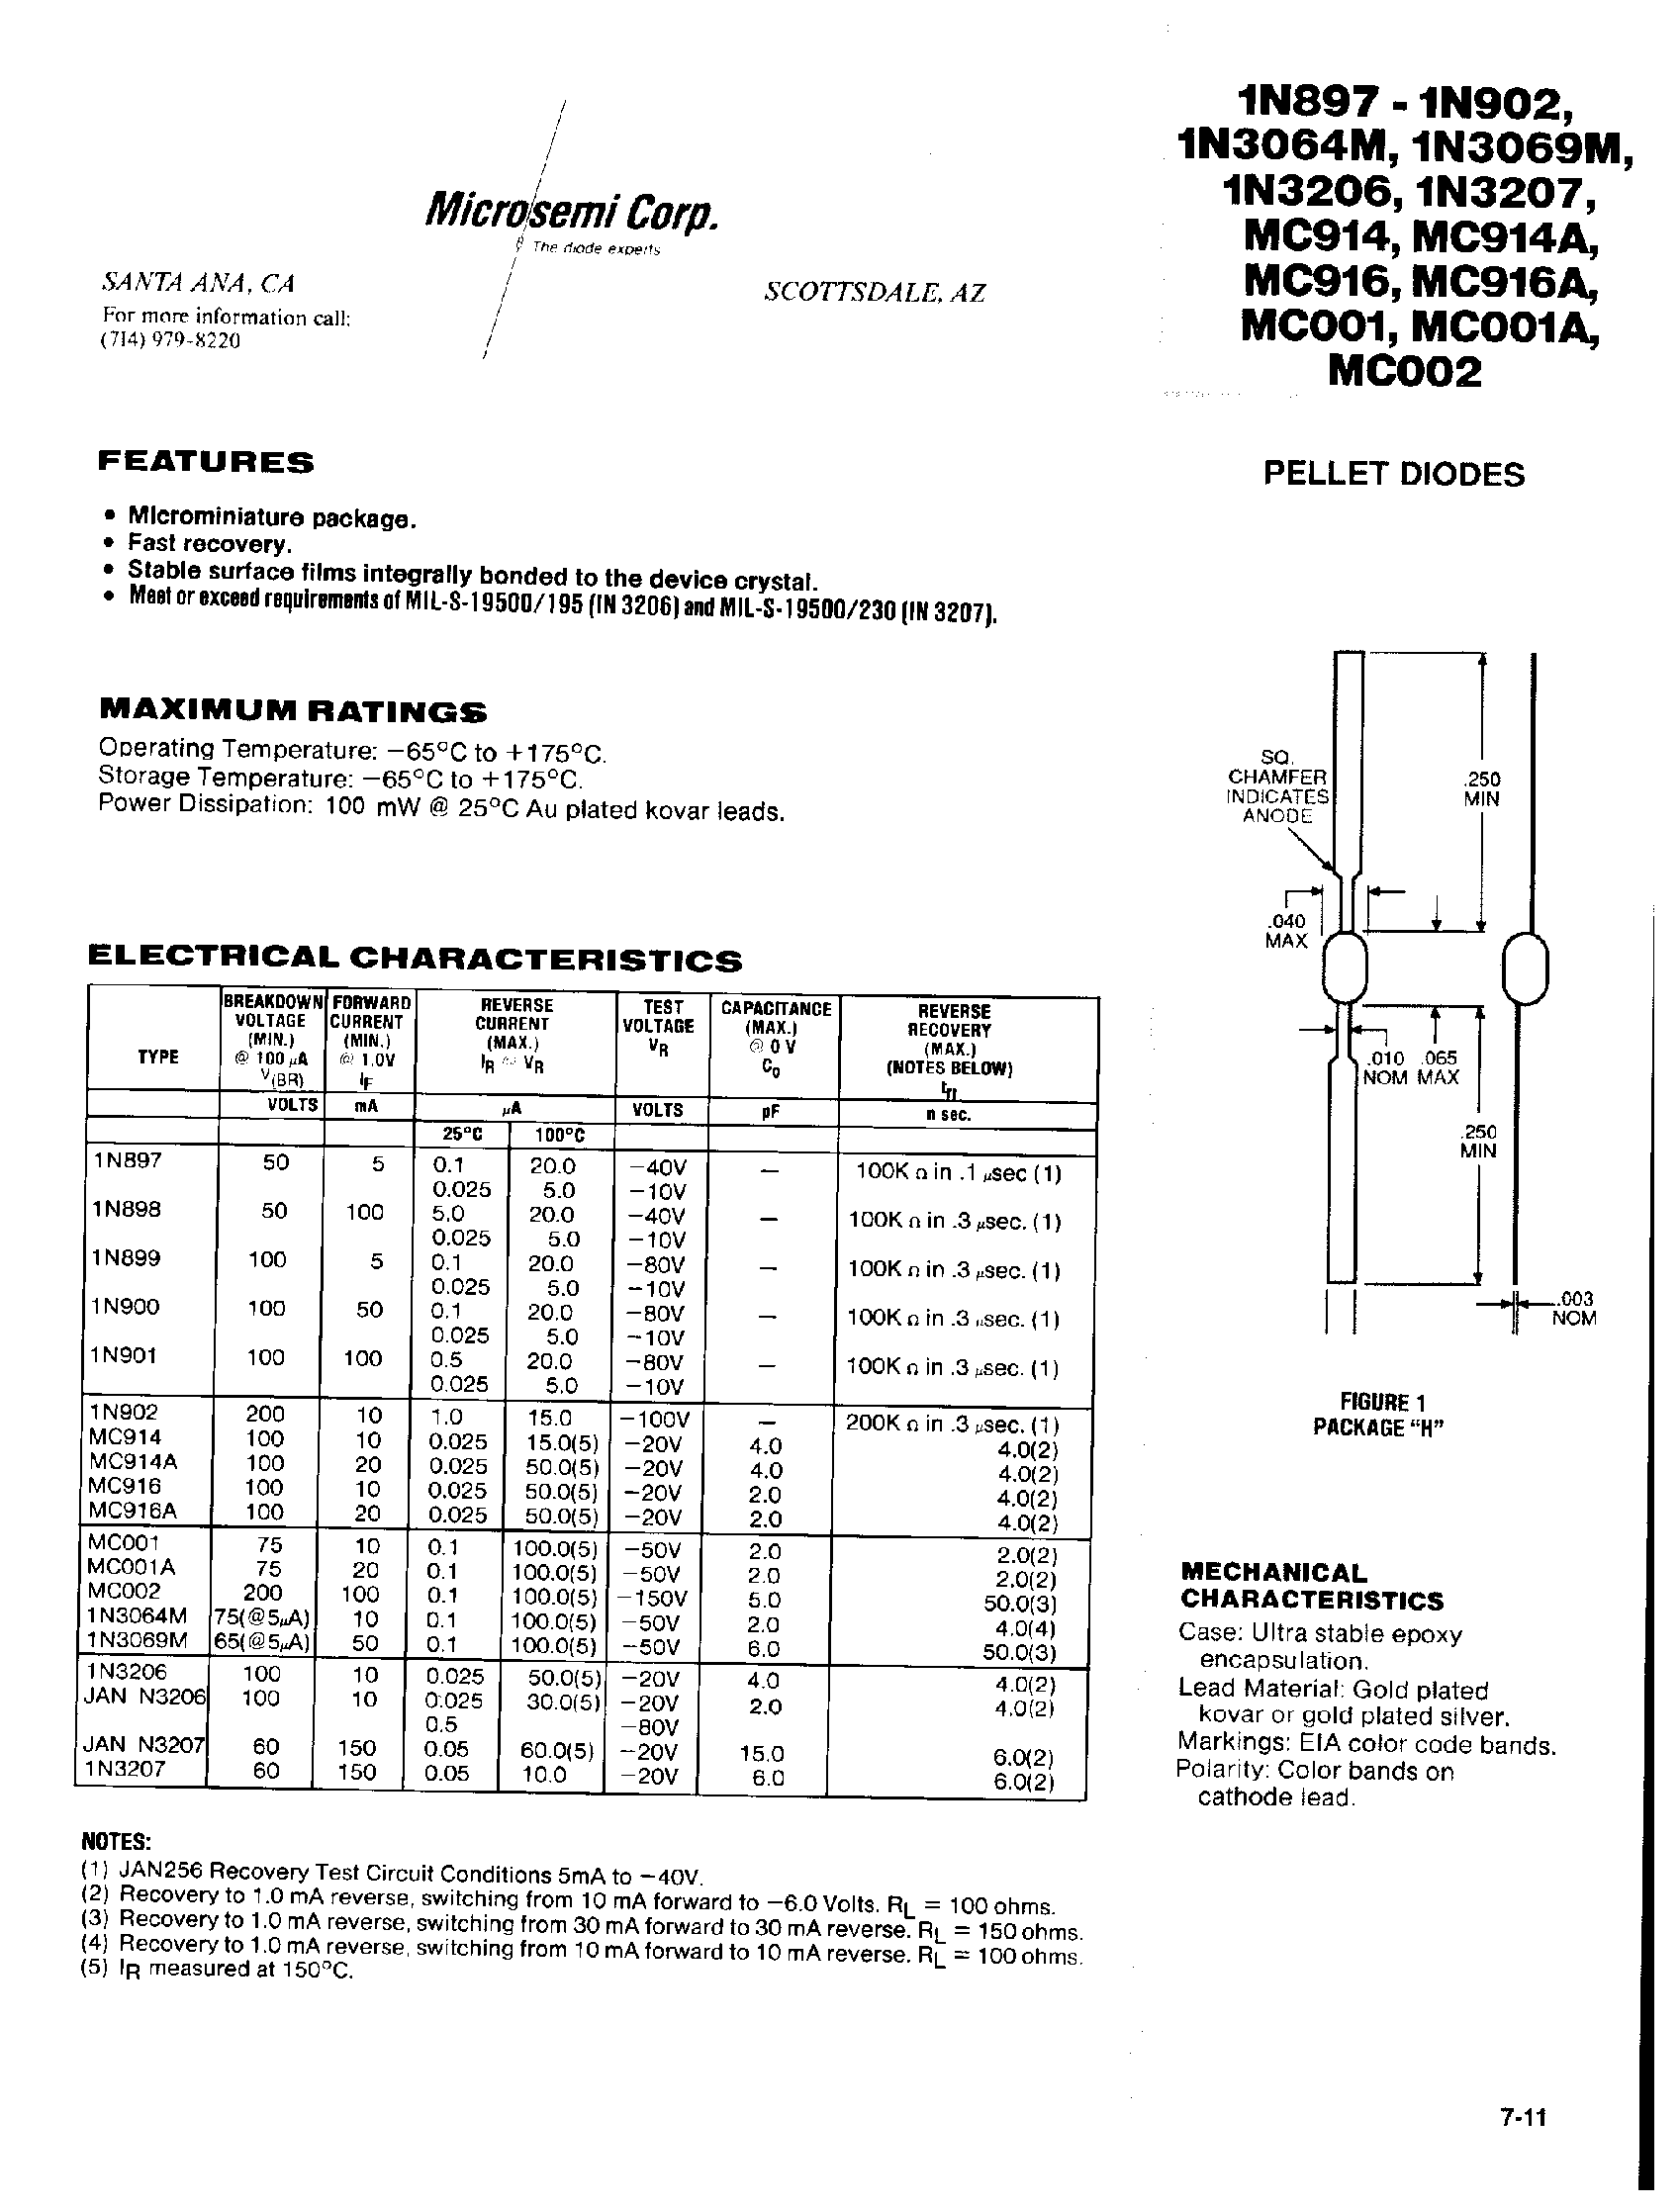 Datasheet 1N897 - (1N897 - 1N899) PELLET DIODES page 1